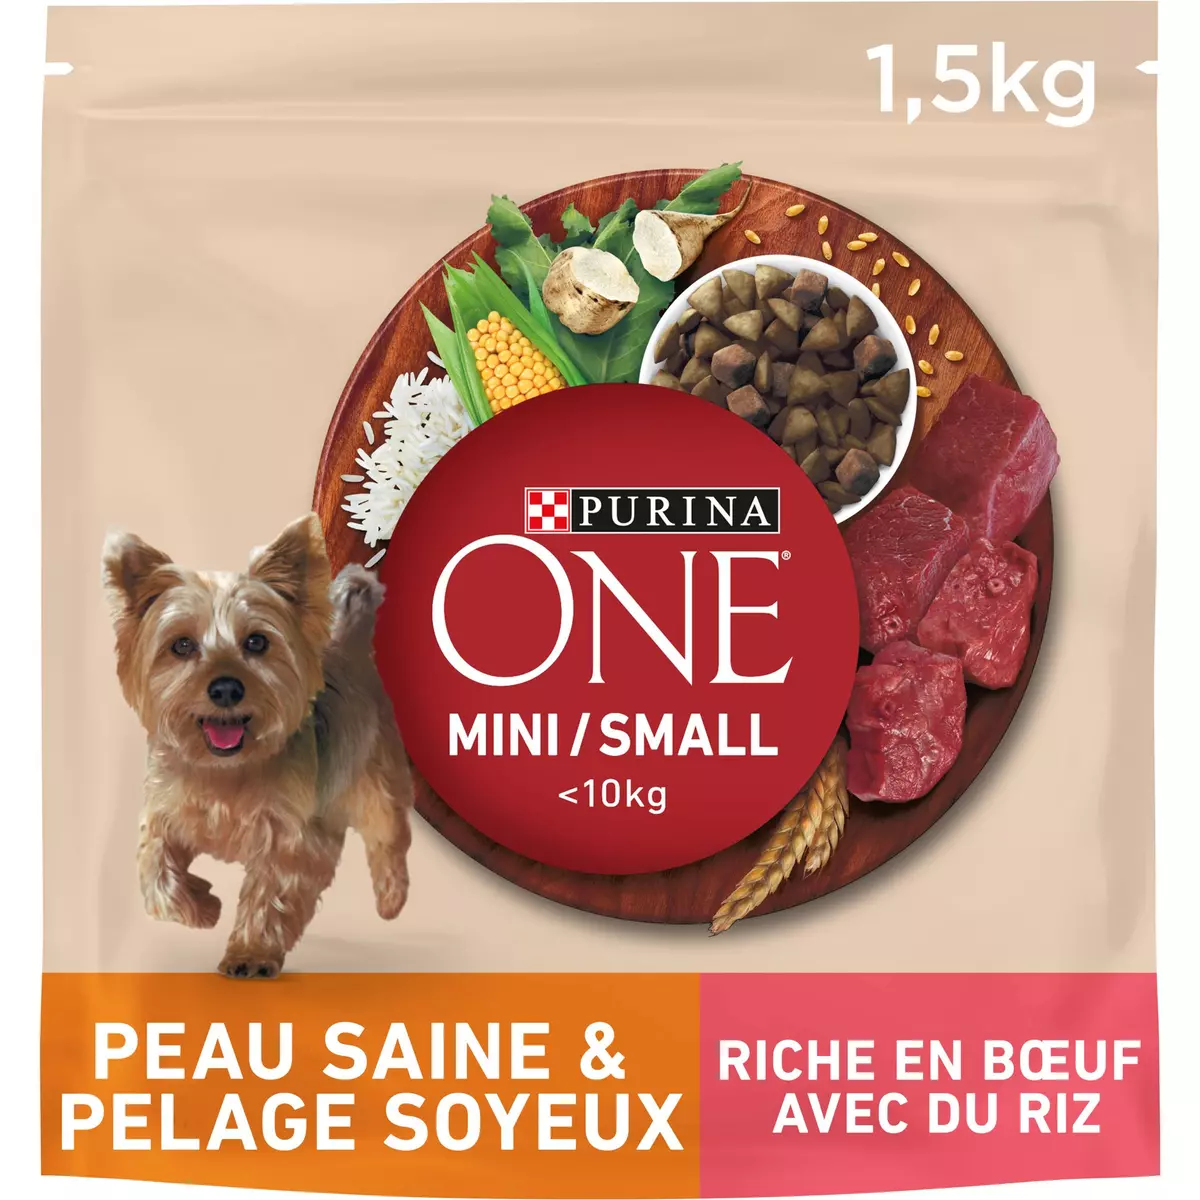 PURINA ONE Croquettes peau saine pelage soyeux riche en bœuf avec du riz pour petit chien 1.5kg